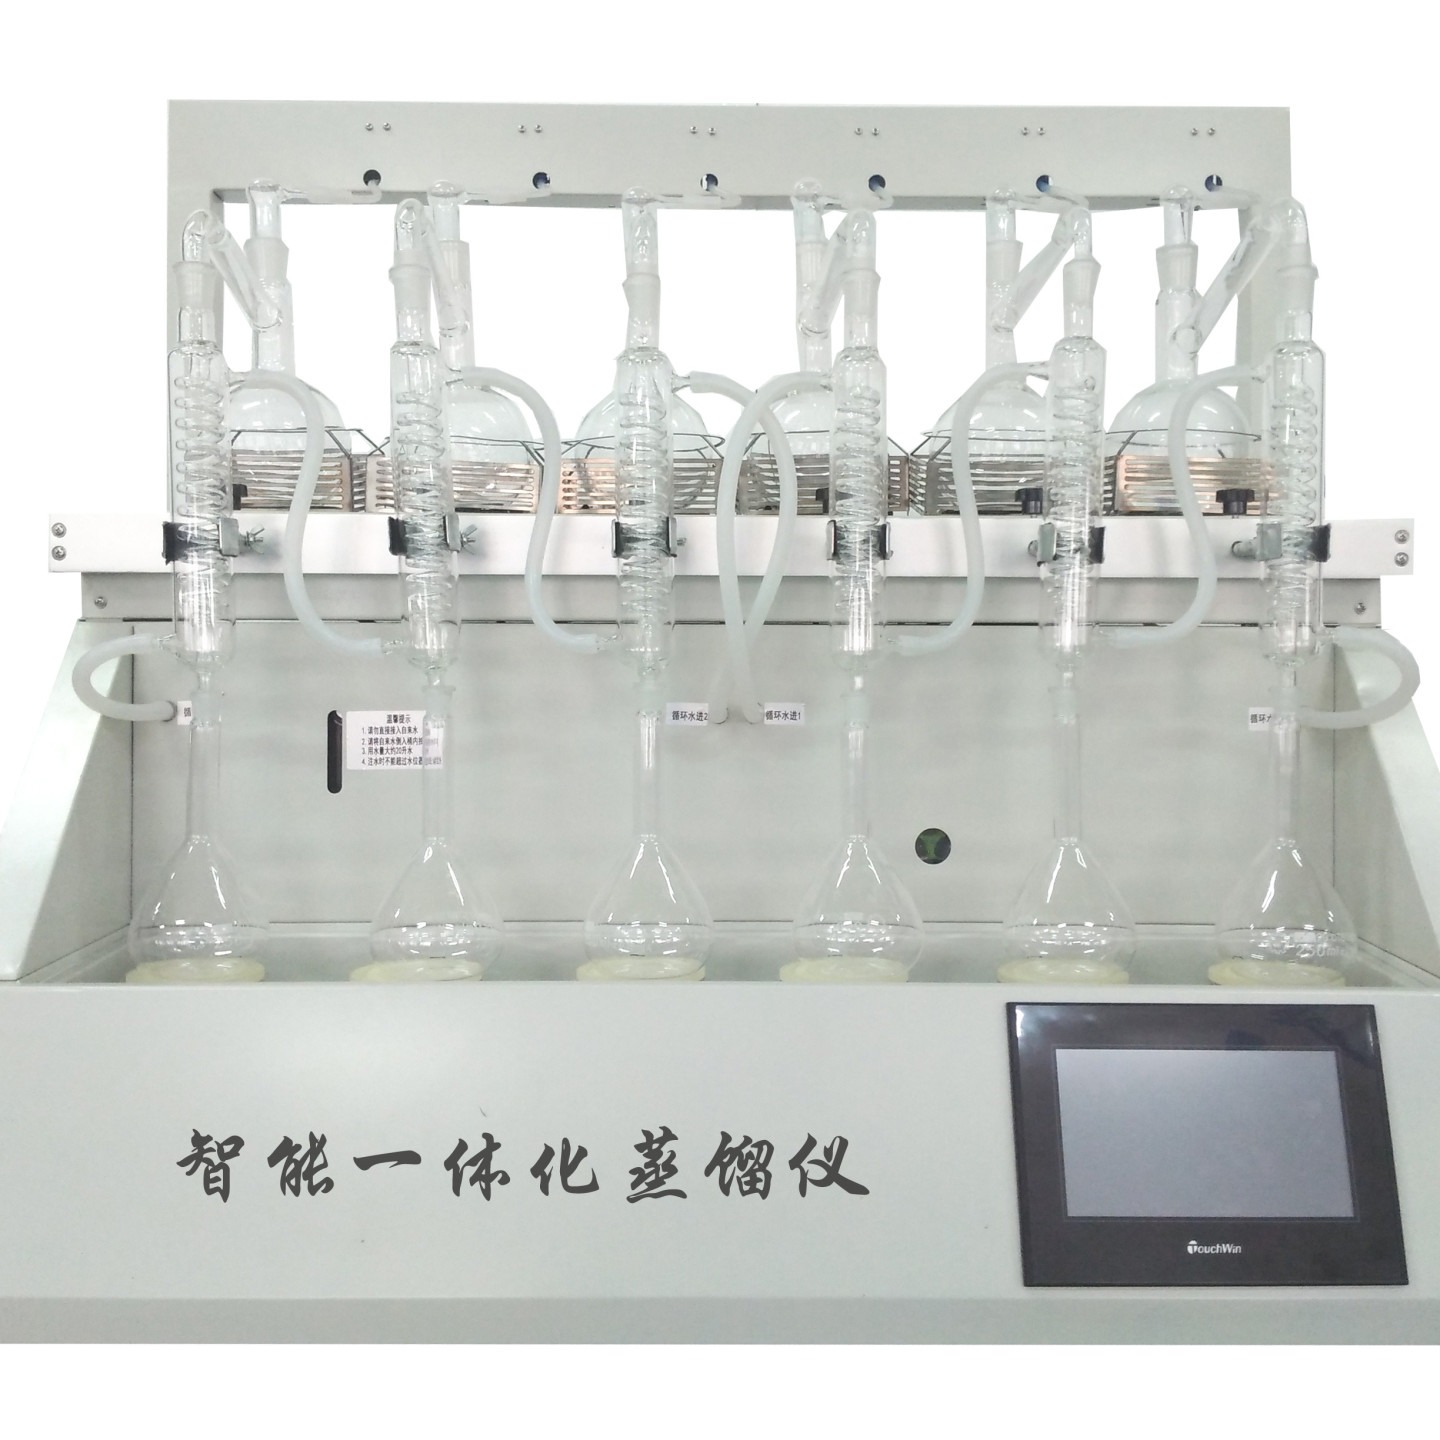 川一仪器万用全自动一体化蒸馏仪  CYZL-6Y 6孔蒸馏装置工业图片